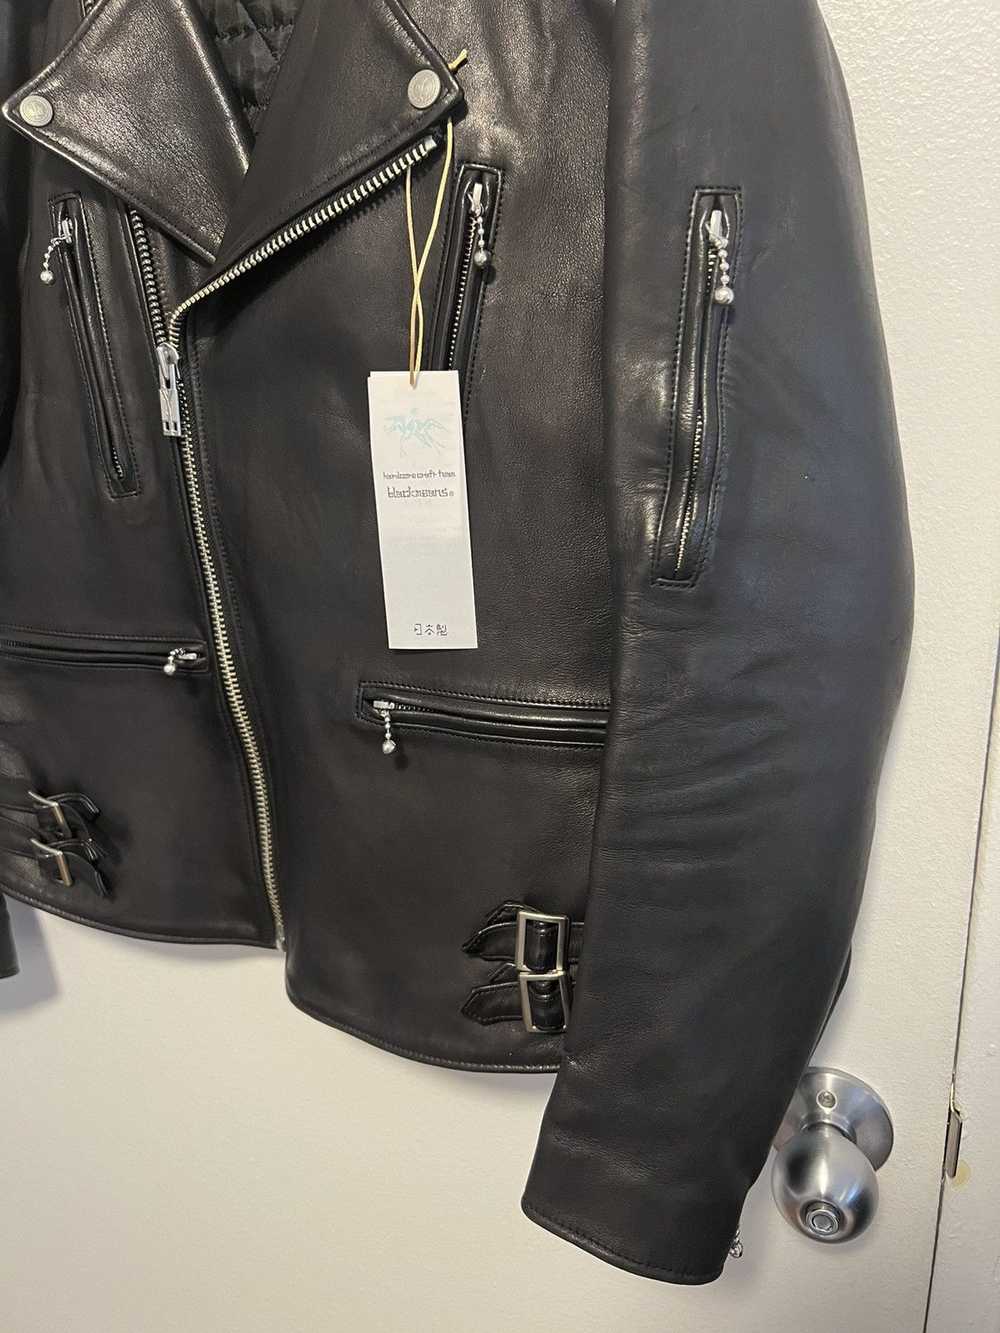 Blackmeans Double Rider Leather Jacket - Size 5 - image 3